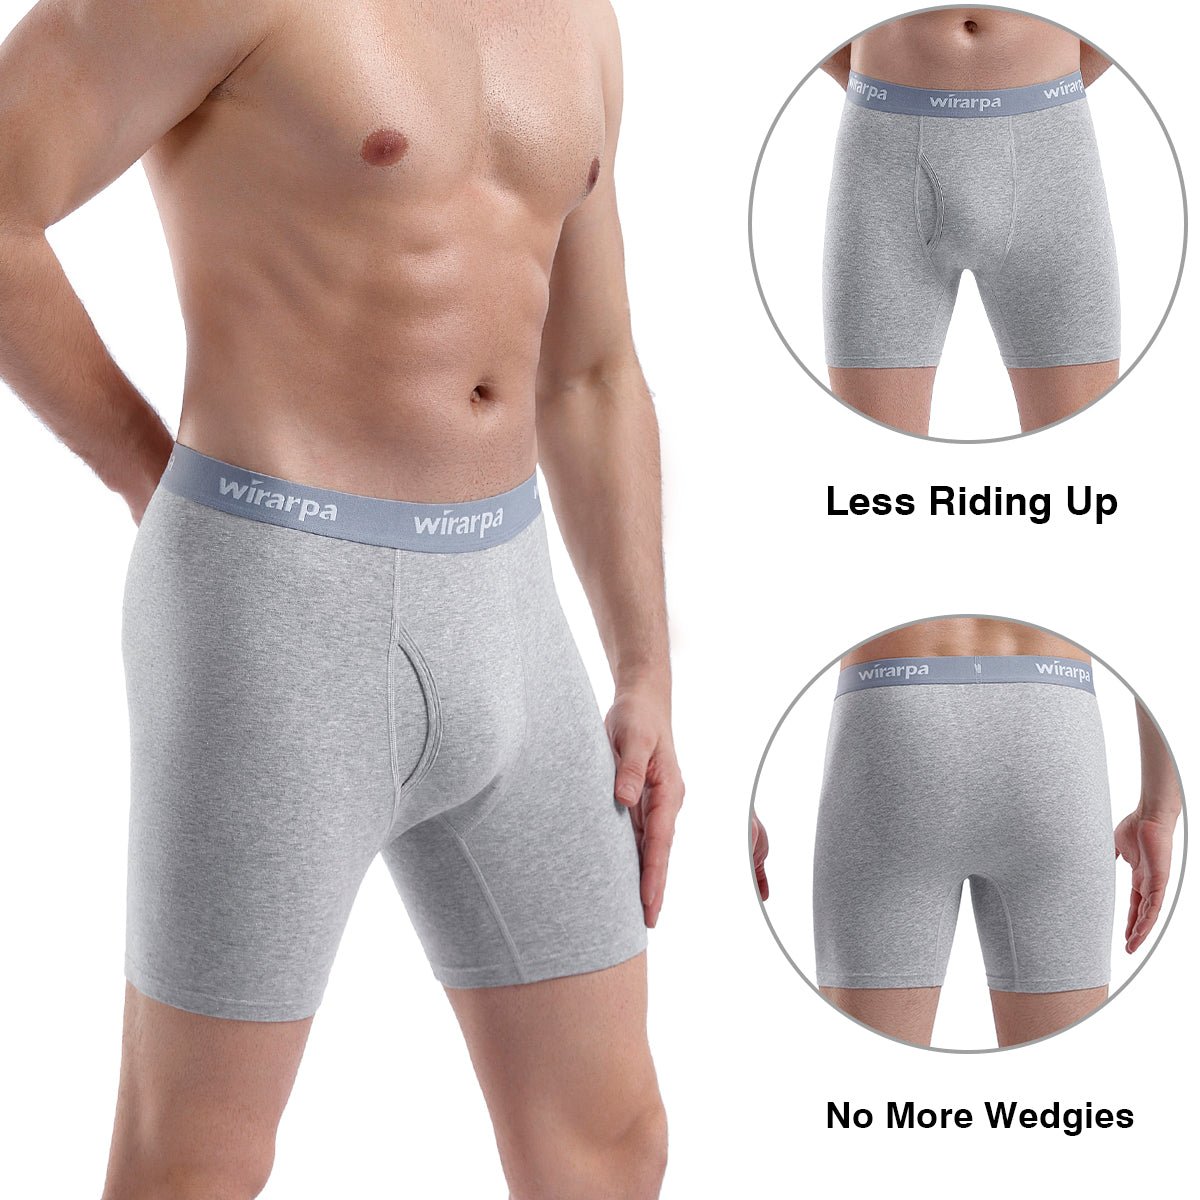 wirarpa Men's Trunk Underwear Short Leg Boxer Briefs Black 4 Pack Sizes  S-3XL 